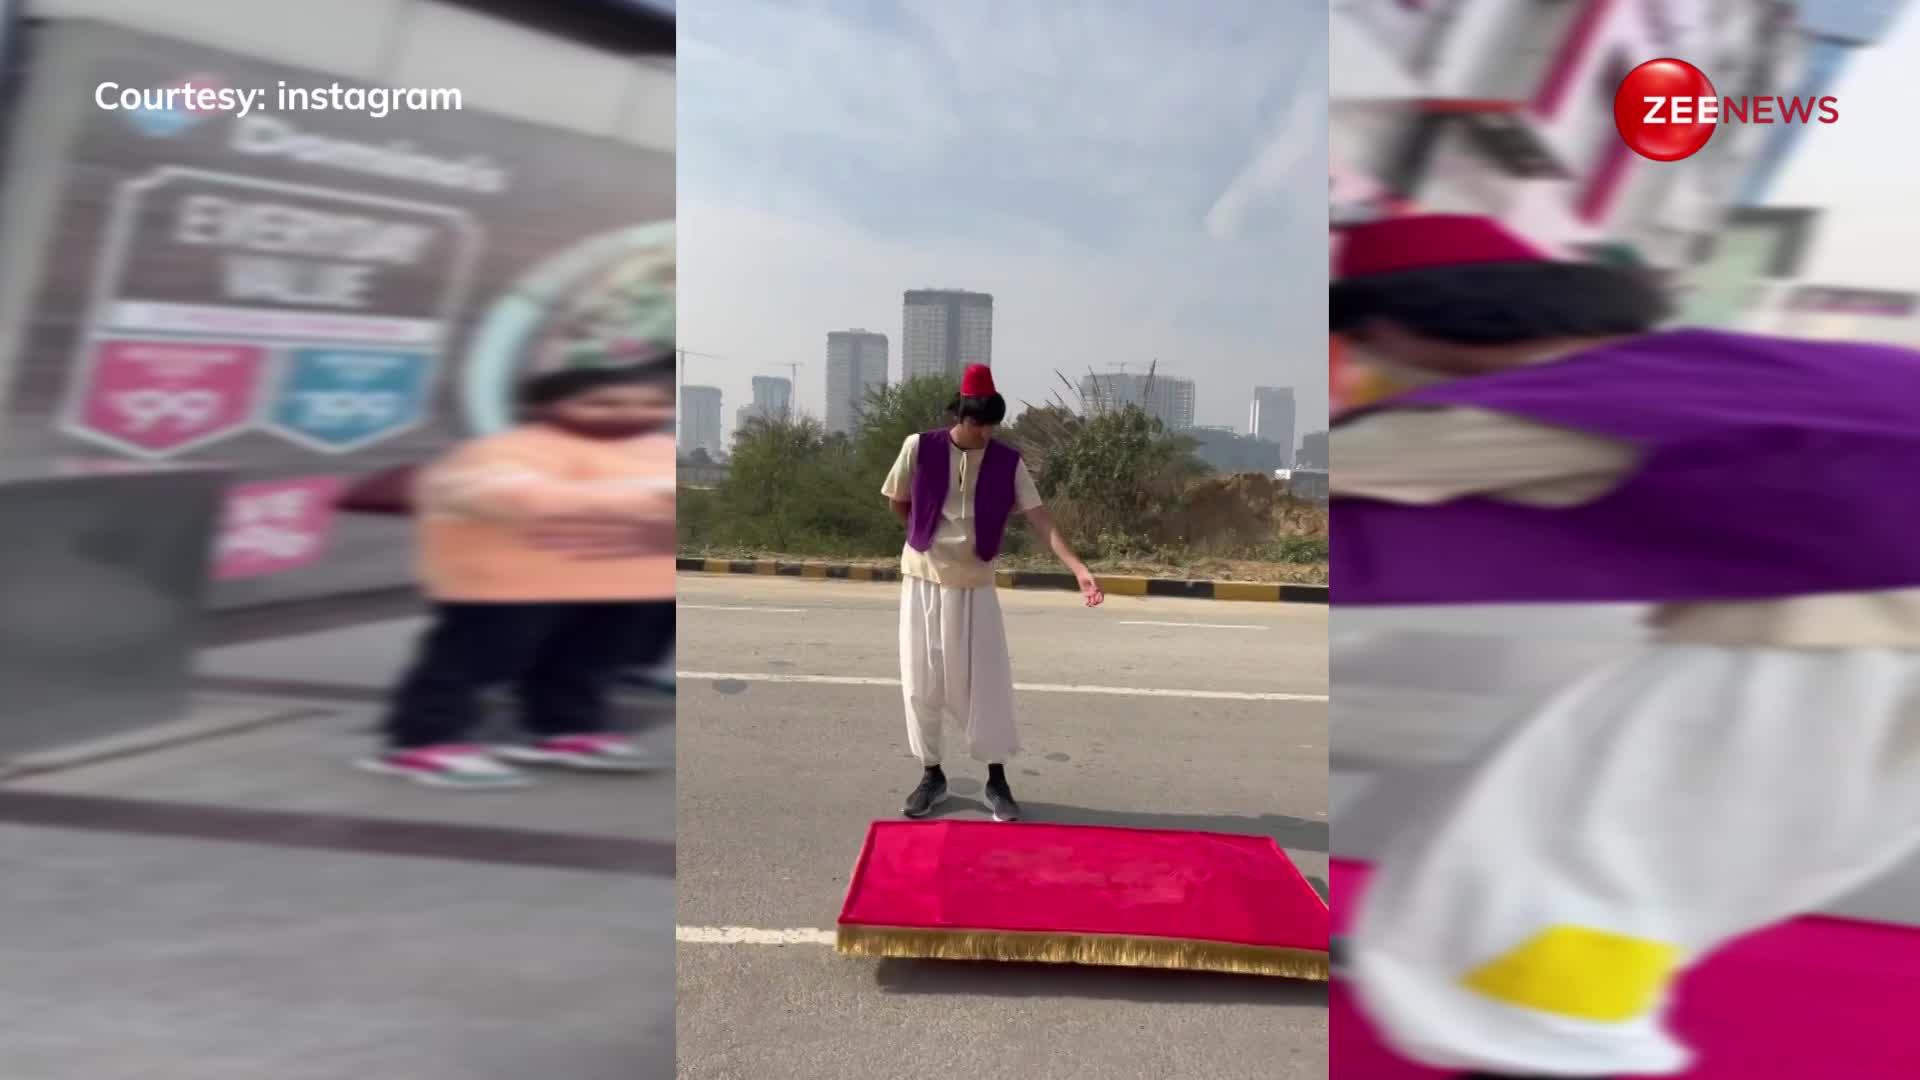 दिल्ली की गलियों में 'जादुई कालीन' की सवारी करता हुआ नजर आया लड़का, वीडियो देख शॉक्ड रह गए यूजर्स